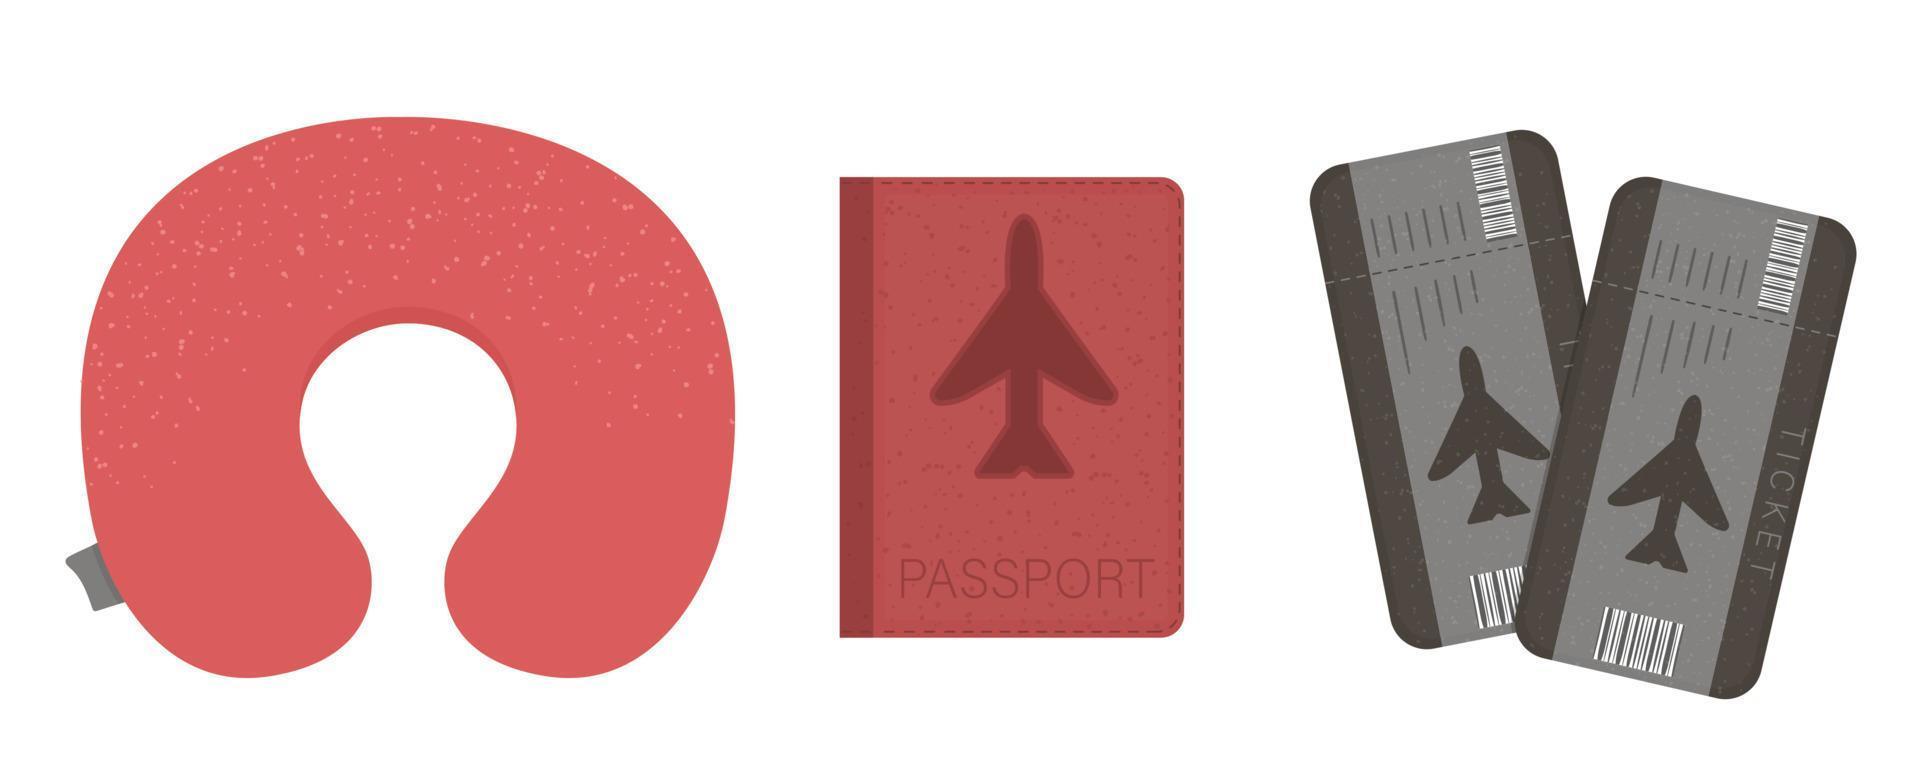 vector ilustración plana de cojín de avión, pasaporte, boletos. icono de equipo de viajero de vuelo. objeto de viaje aislado sobre fondo blanco. elemento de infografía de vacaciones.